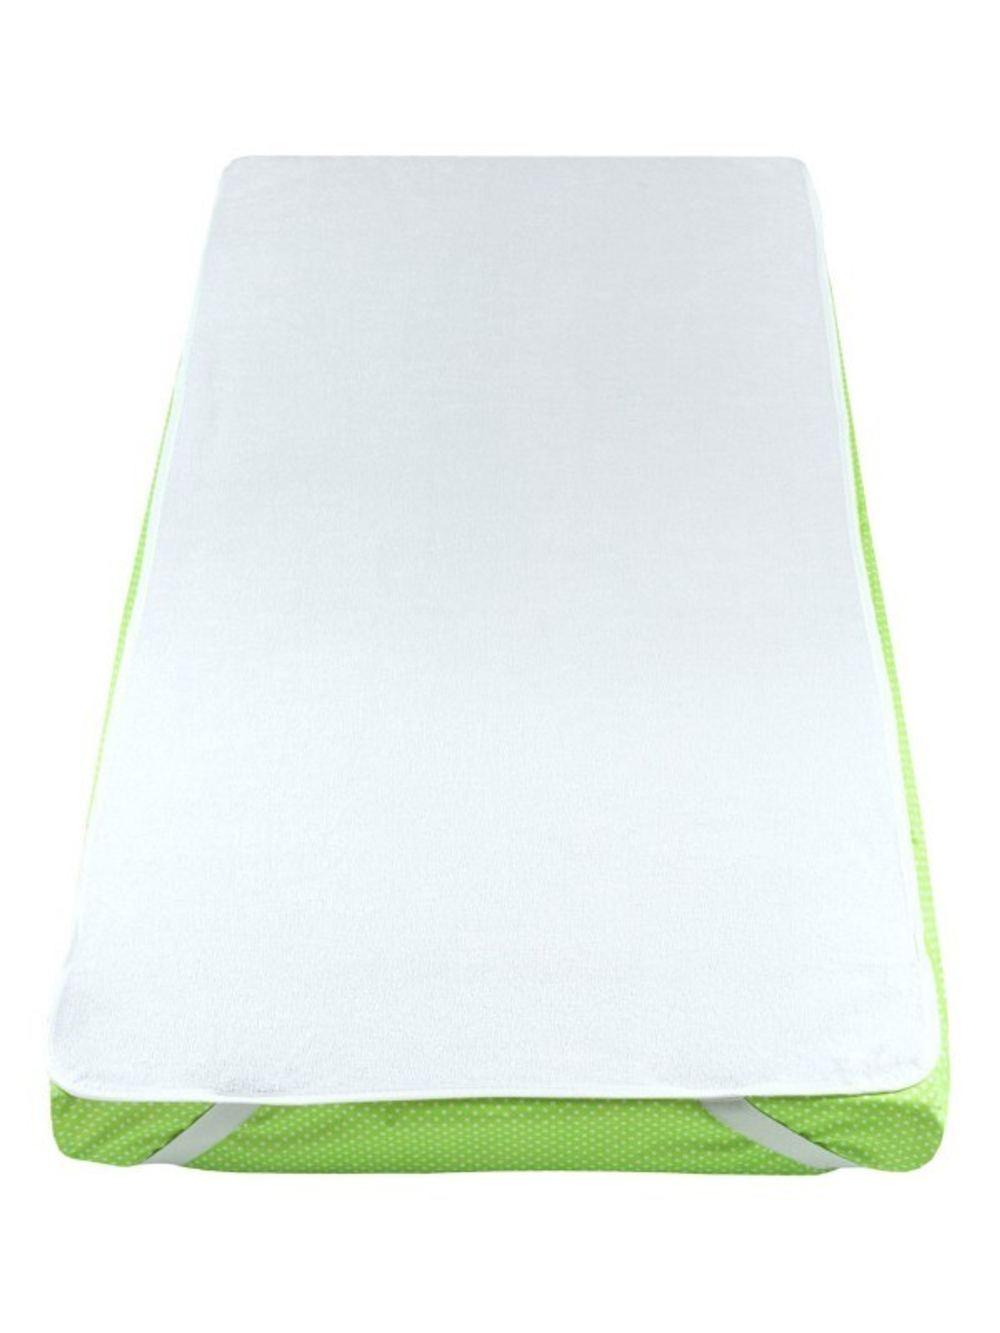 Наматрасник для детской кроватки ПУ основа с х/б покрытием, 120х60 см, белый